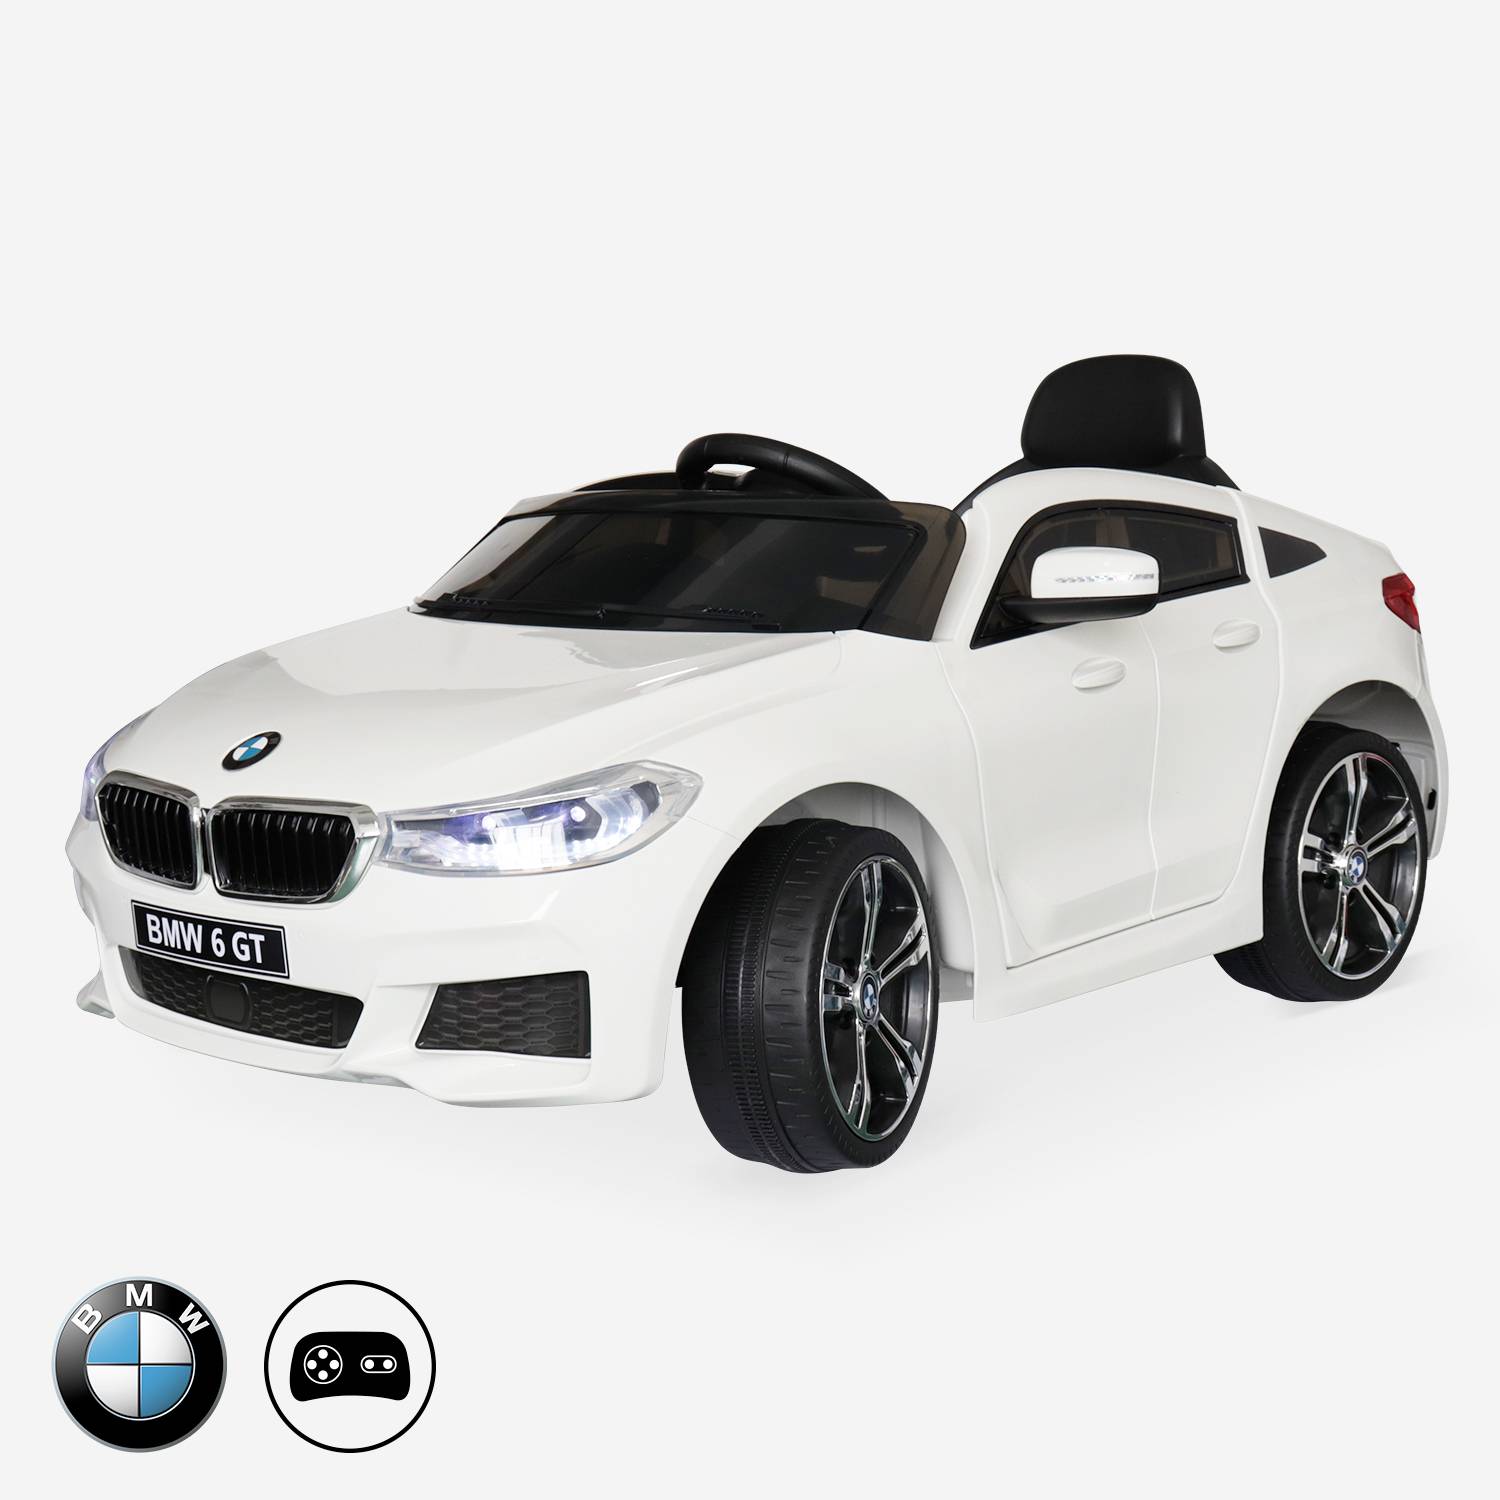 BMW Serie 6 GT Gran Turismo bianca, auto elettrica per bambini 12V 4 Ah, 1 posto, con radio e telecomando Photo1